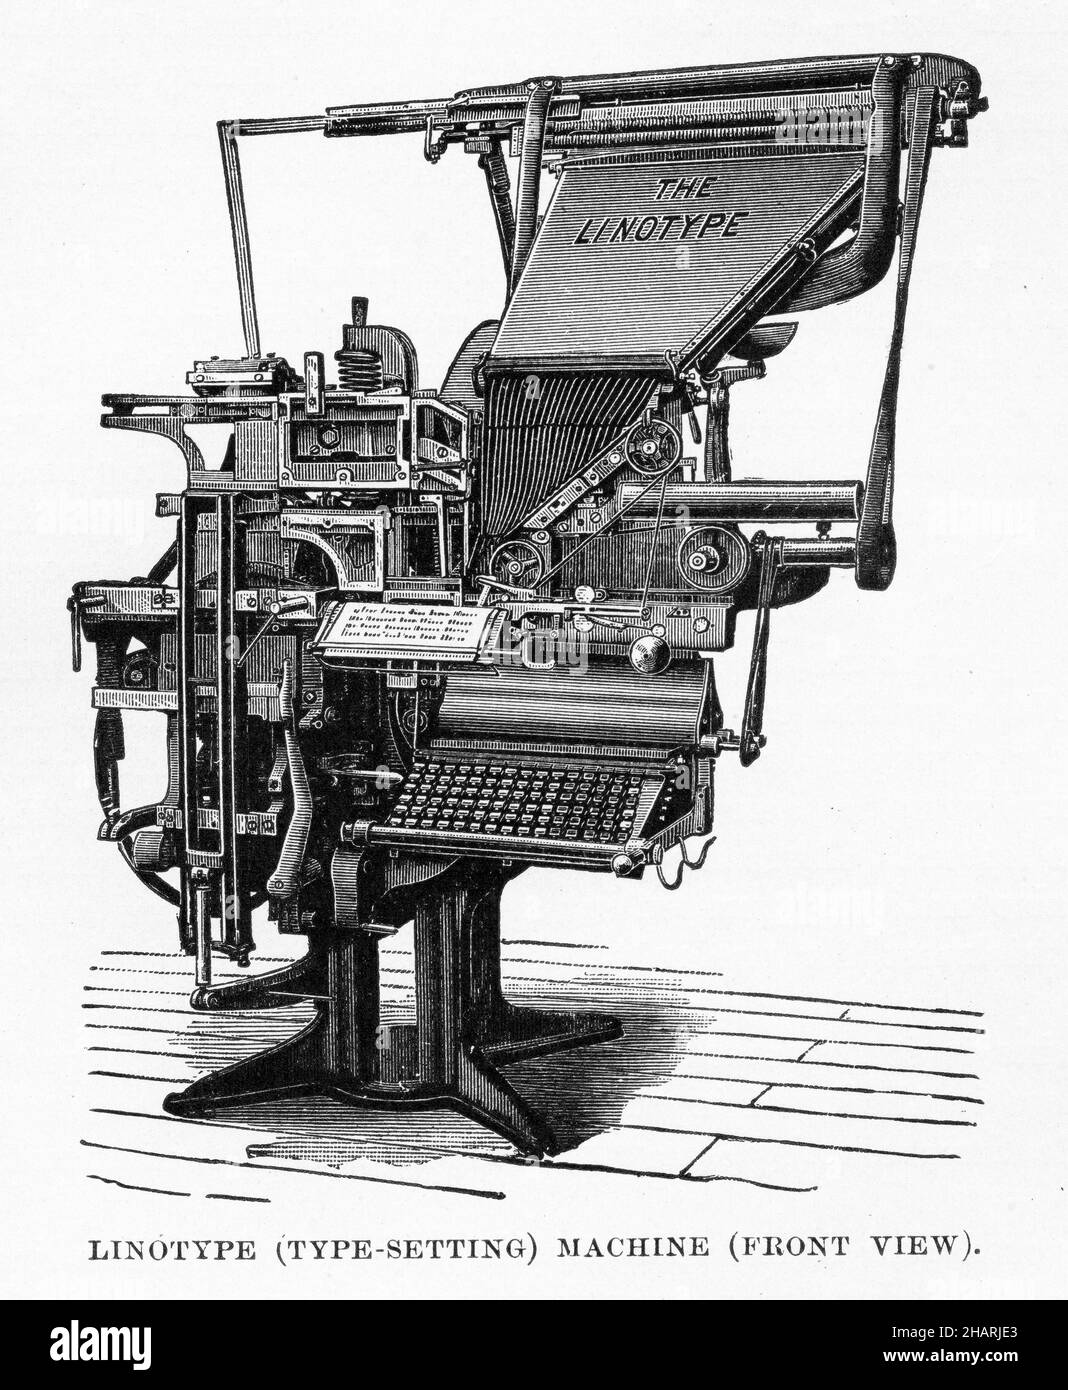 Invention of printing Banque d'images détourées - Alamy